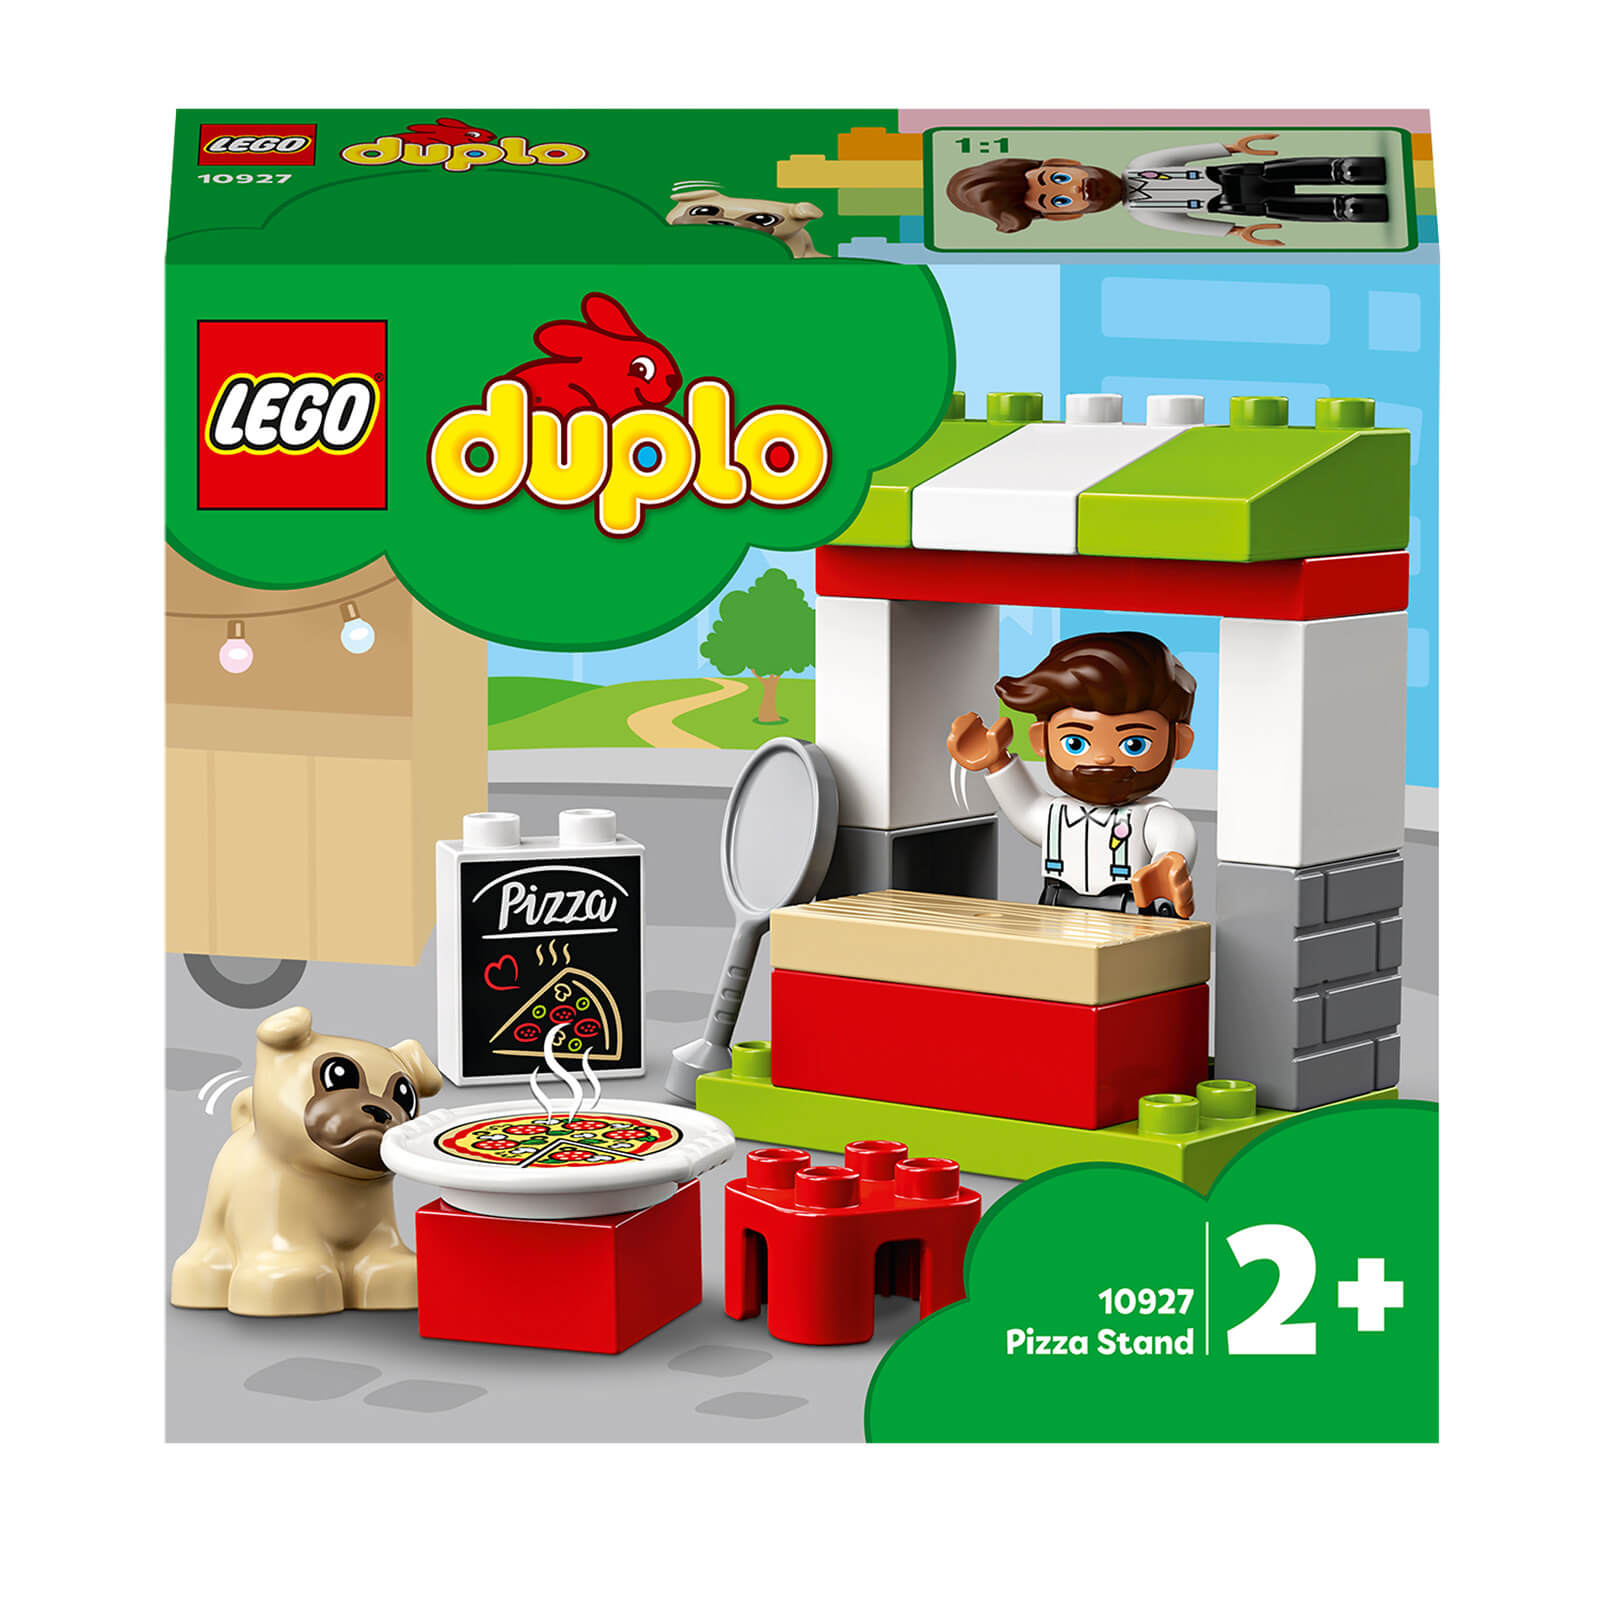 LEGO DUPLO Town: Juego de construcción de un puesto de pizza (10927)